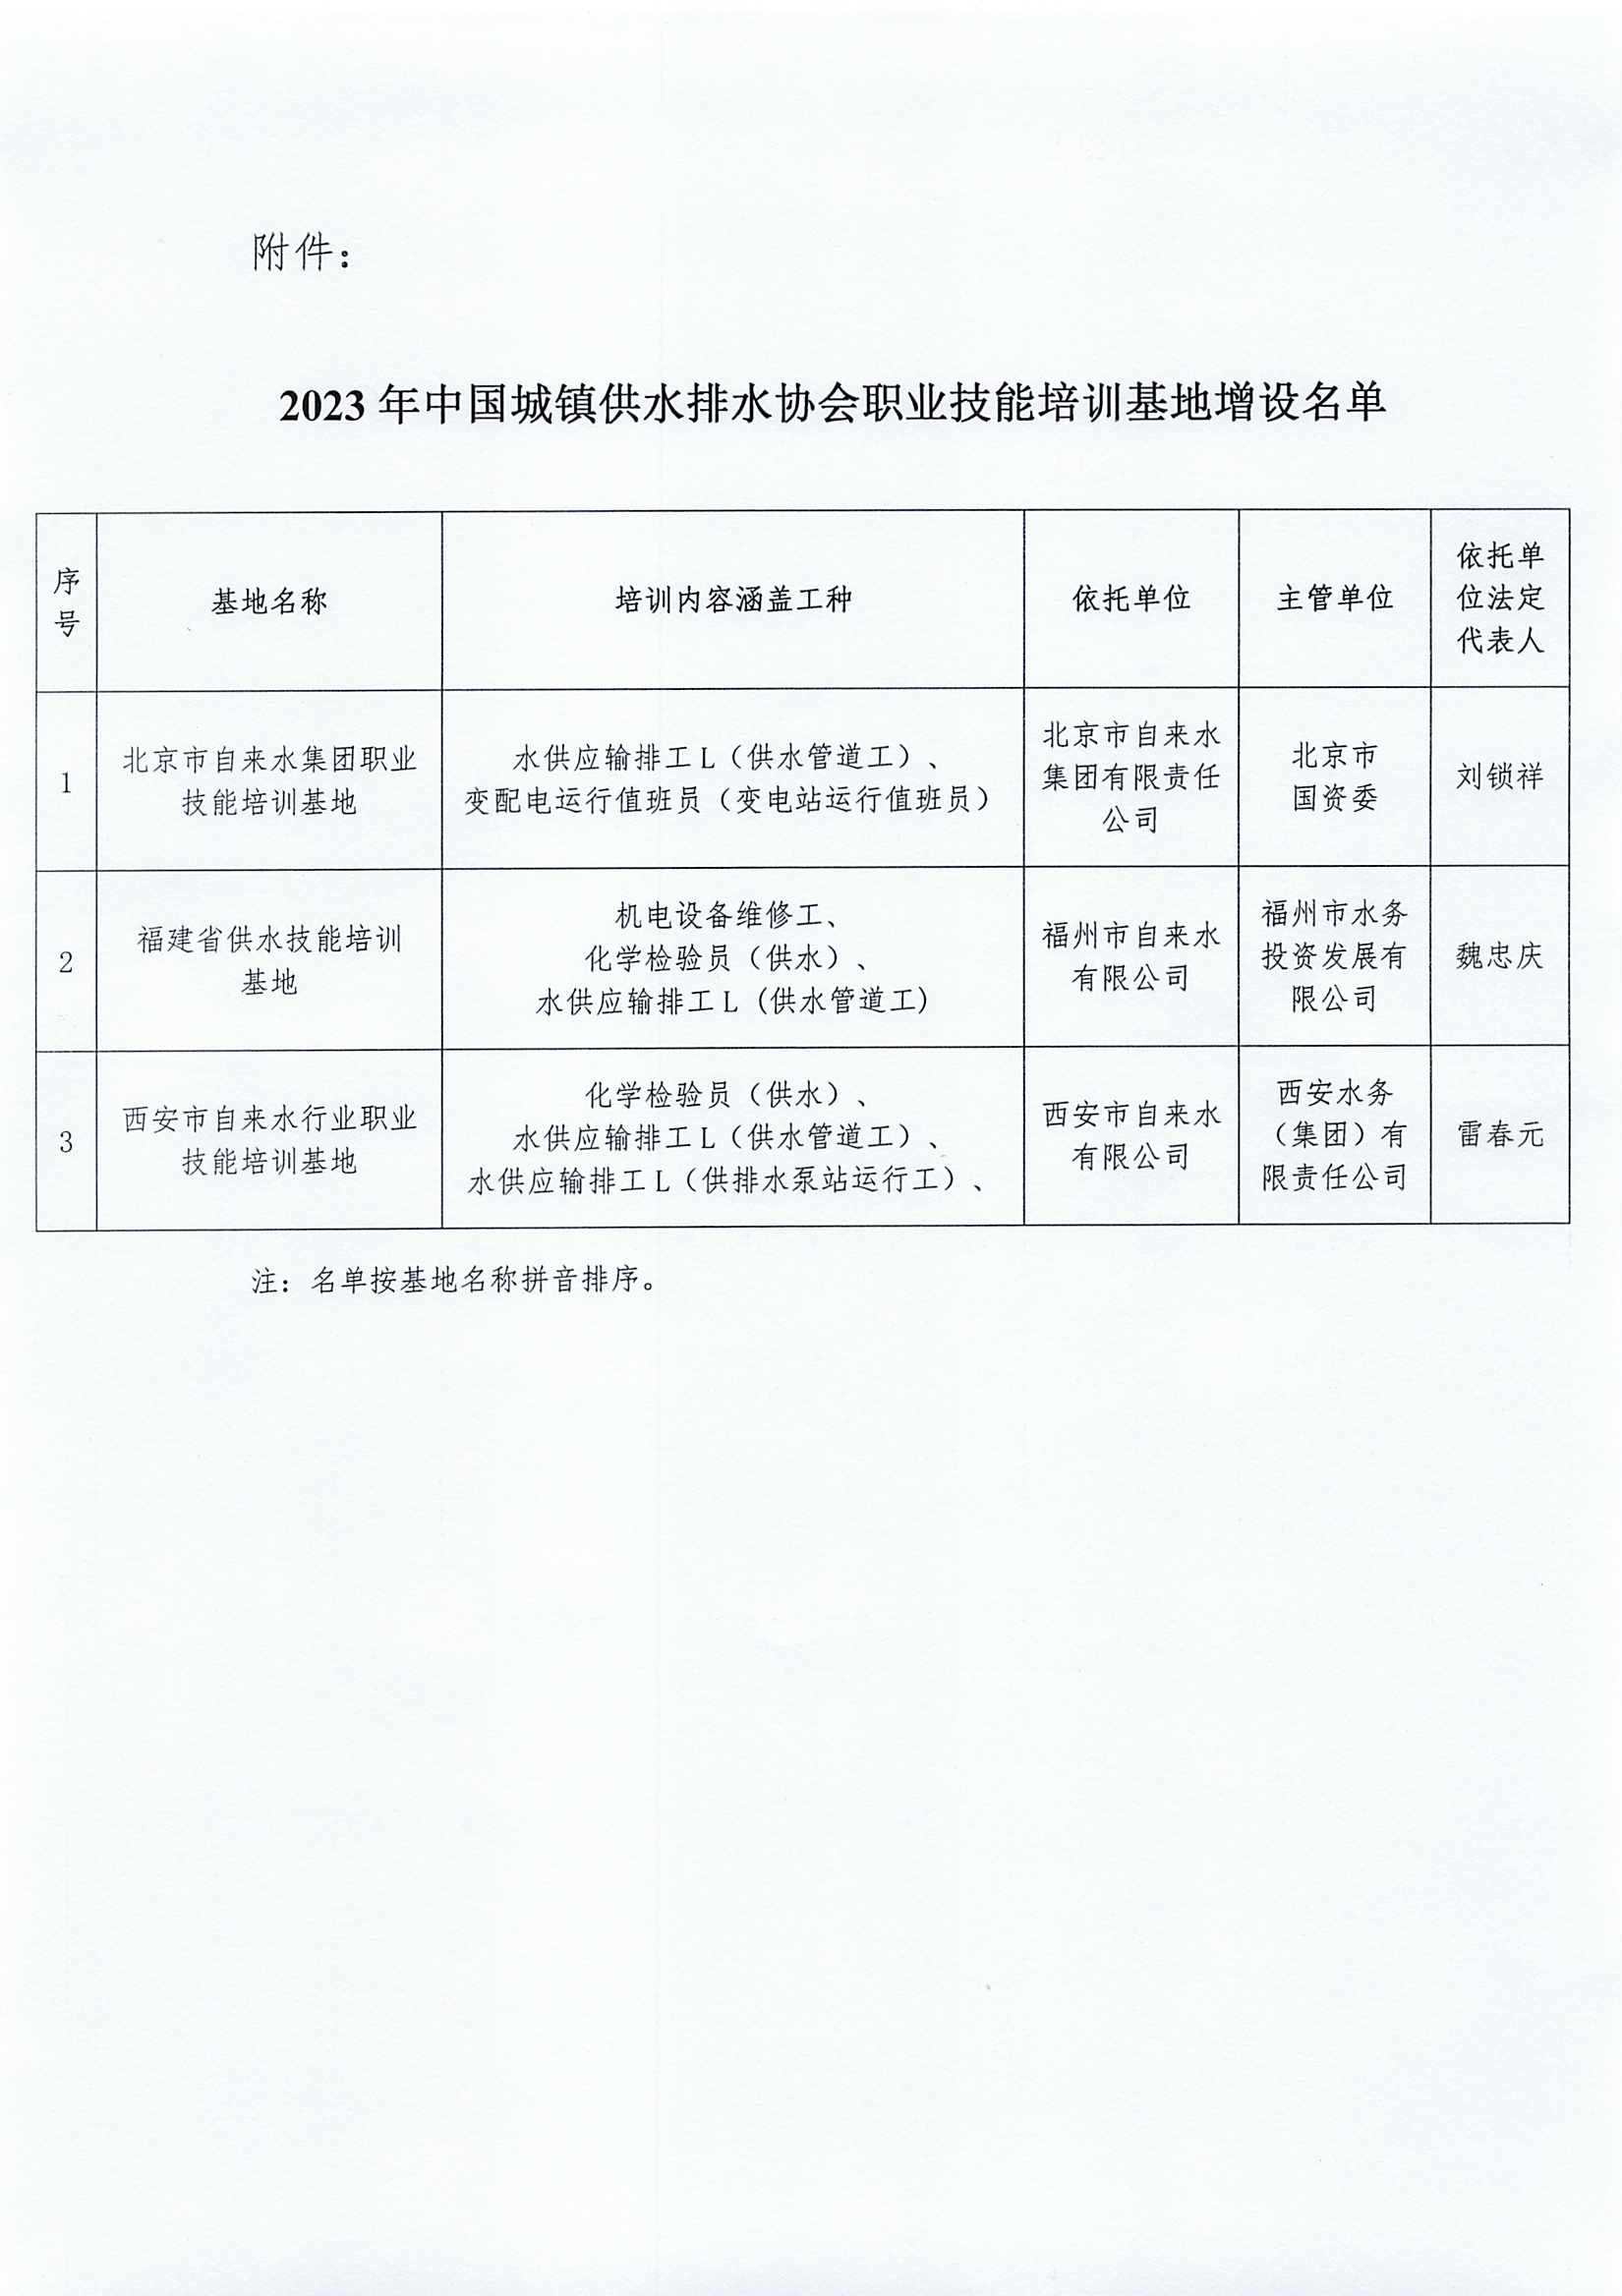 关于增设中国城镇供水排水协会职业技能培训基地的公告_页面_2.jpg